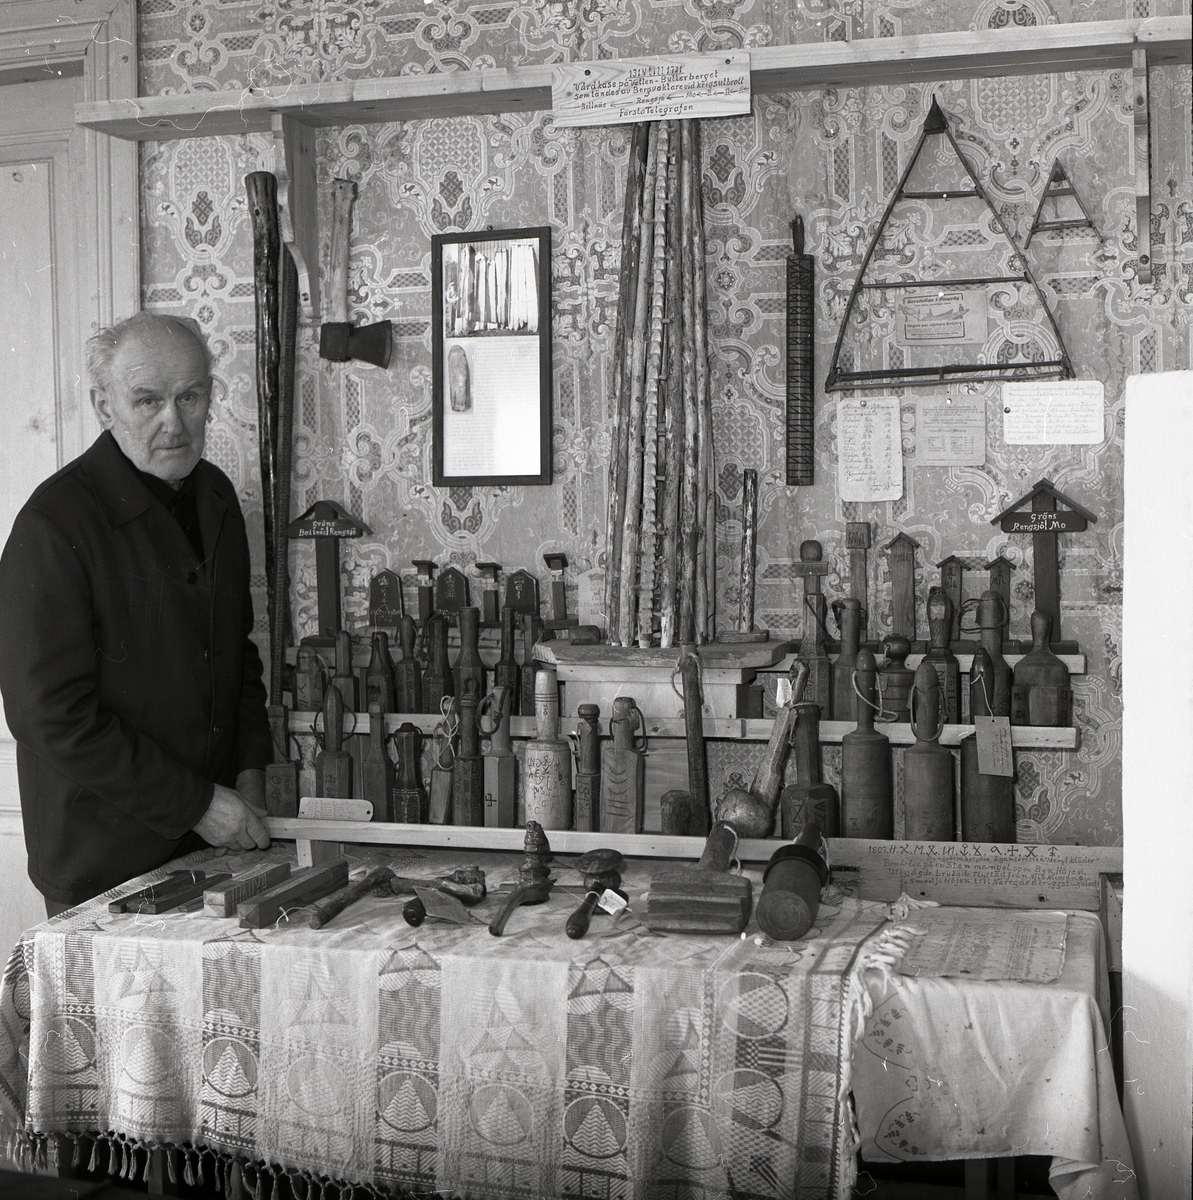 En man står i ett rum och tittar på en samling föremål som till största delen består av byklubbor, hösten 1982.